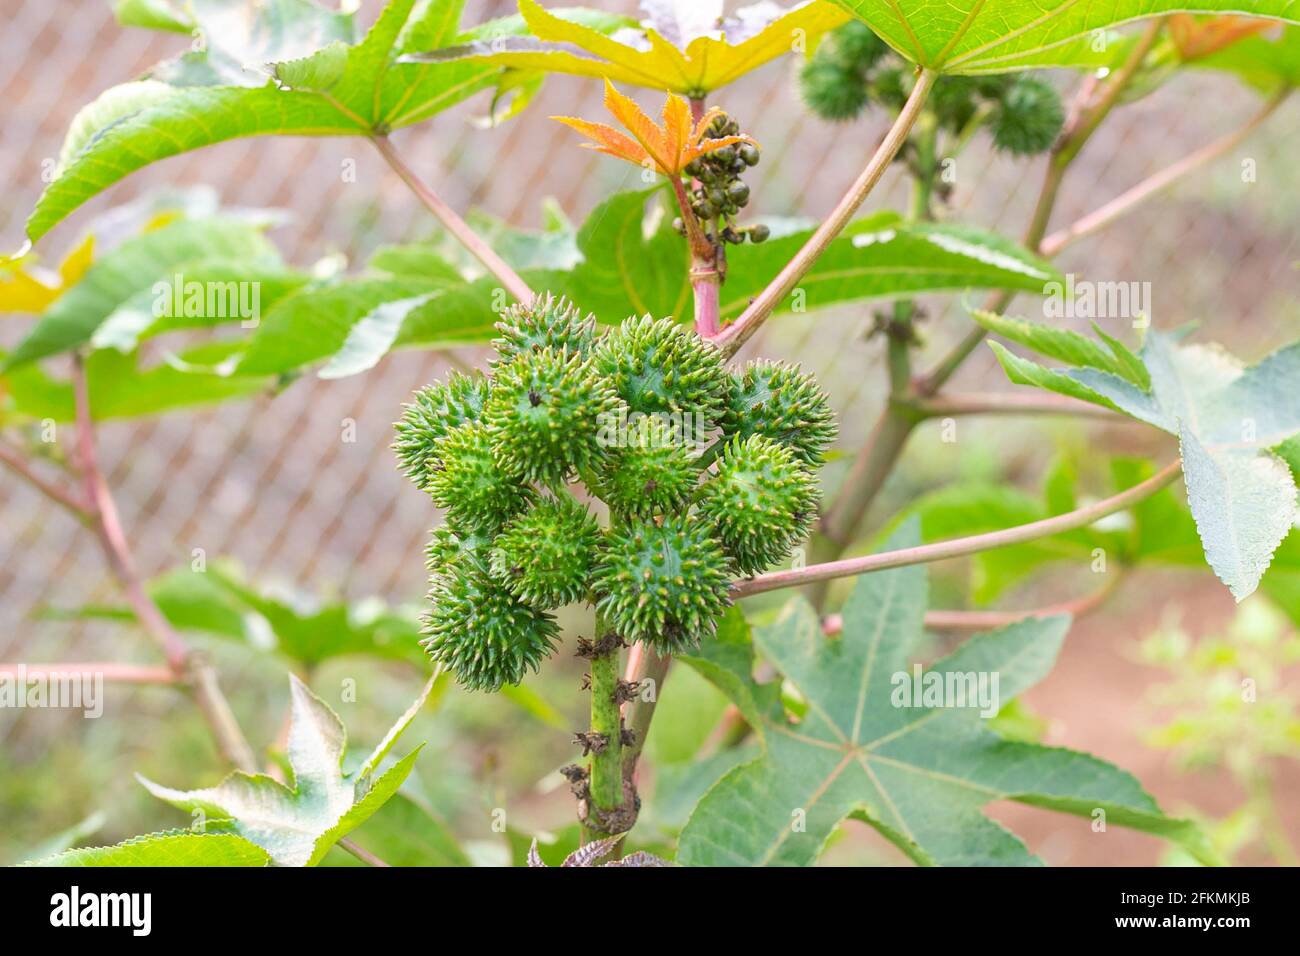 Castor oil plant, asia Castor fruits green Castor oil image Stock Photo